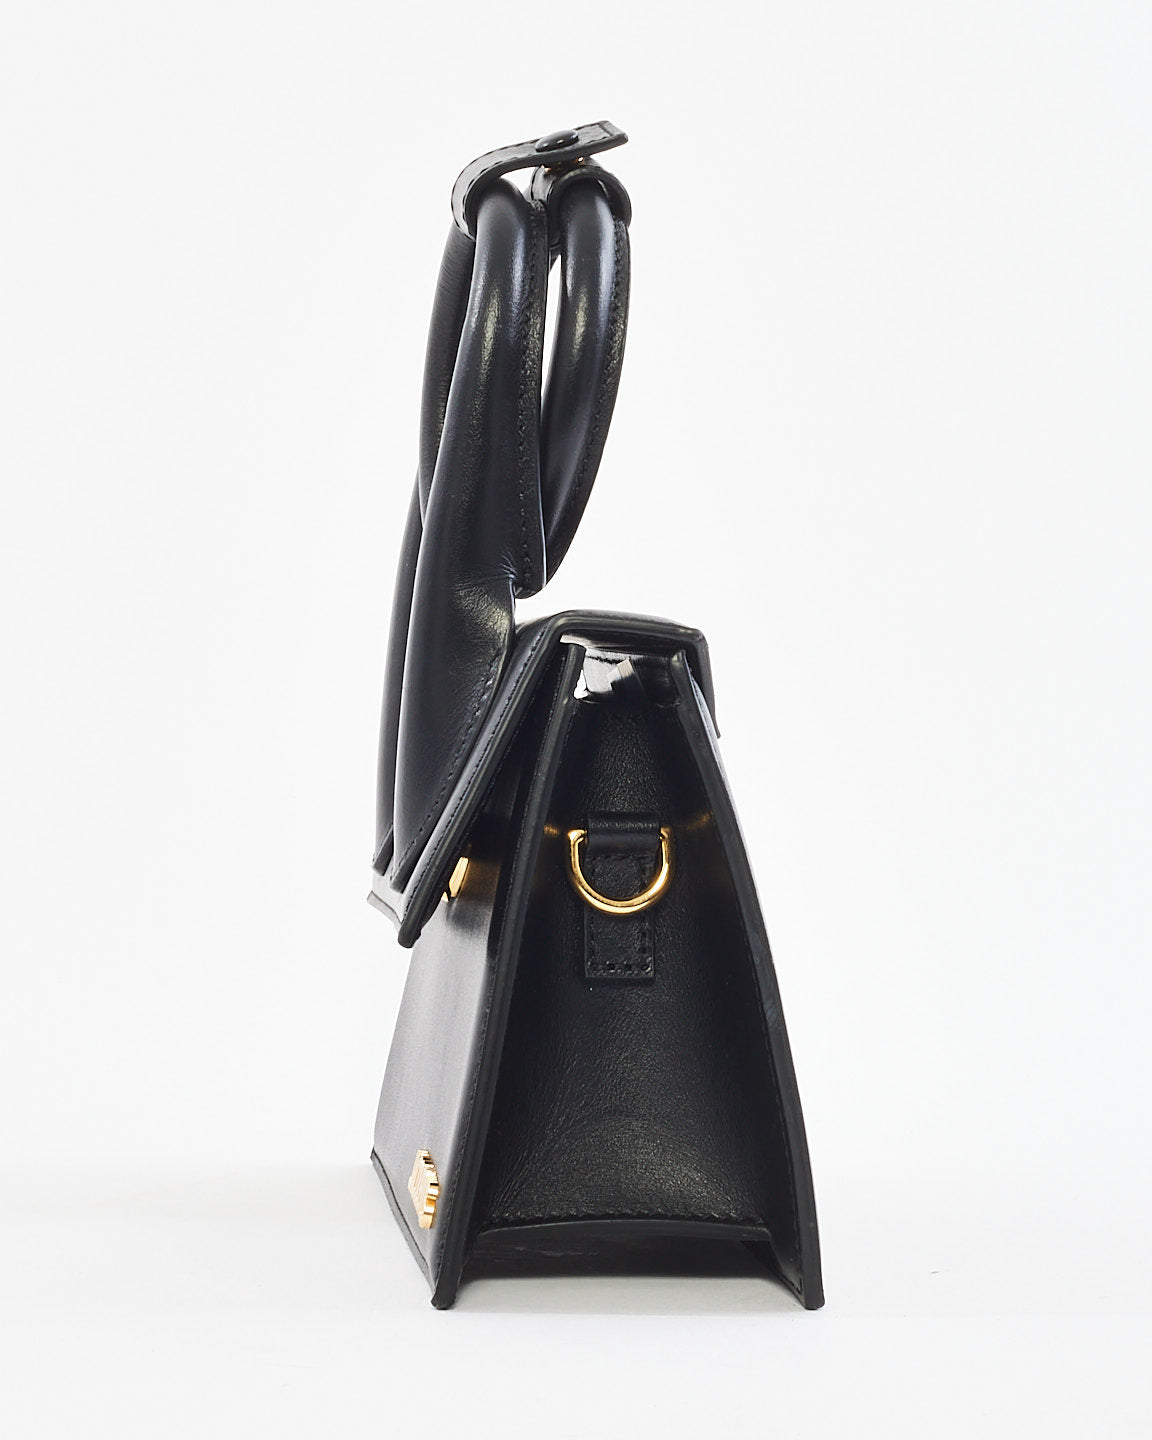 Jacquemus Black Leather Les Classiques "Le Chiquito Noeud" Bag